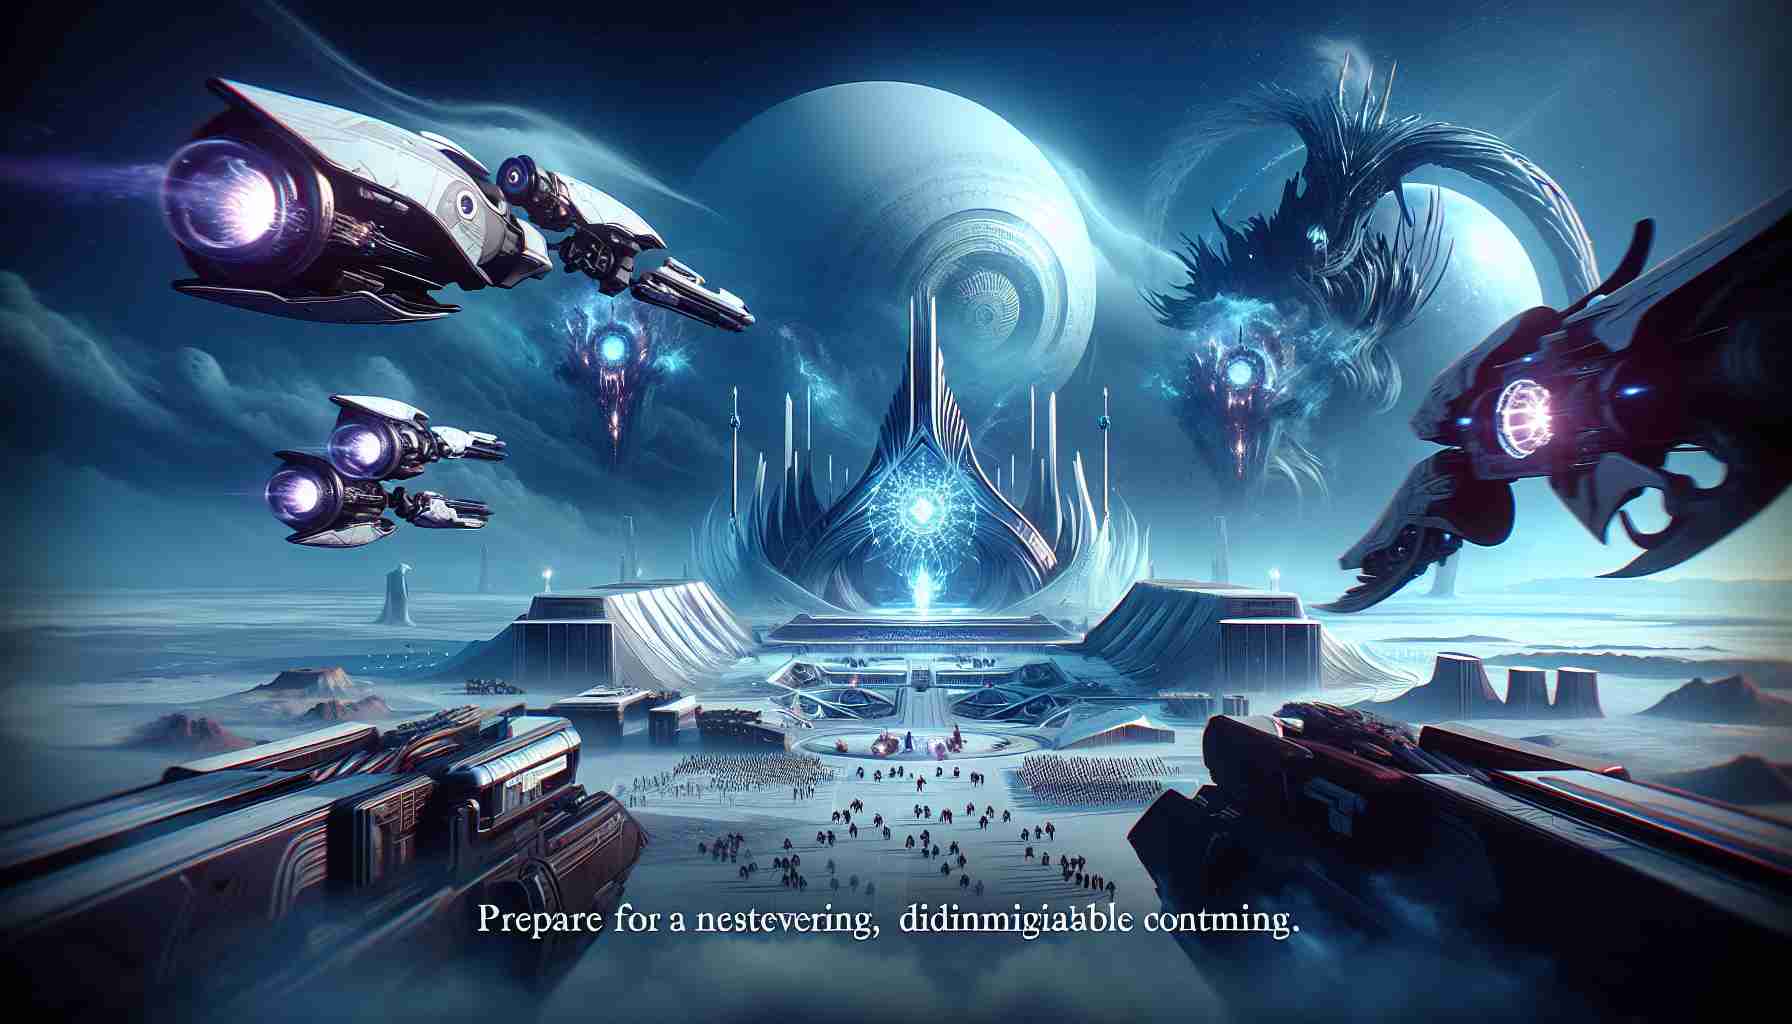 Destiny 2 : La Forme Finale - Découvrez la Fin Épique du Conflit Lumière contre Ténèbres